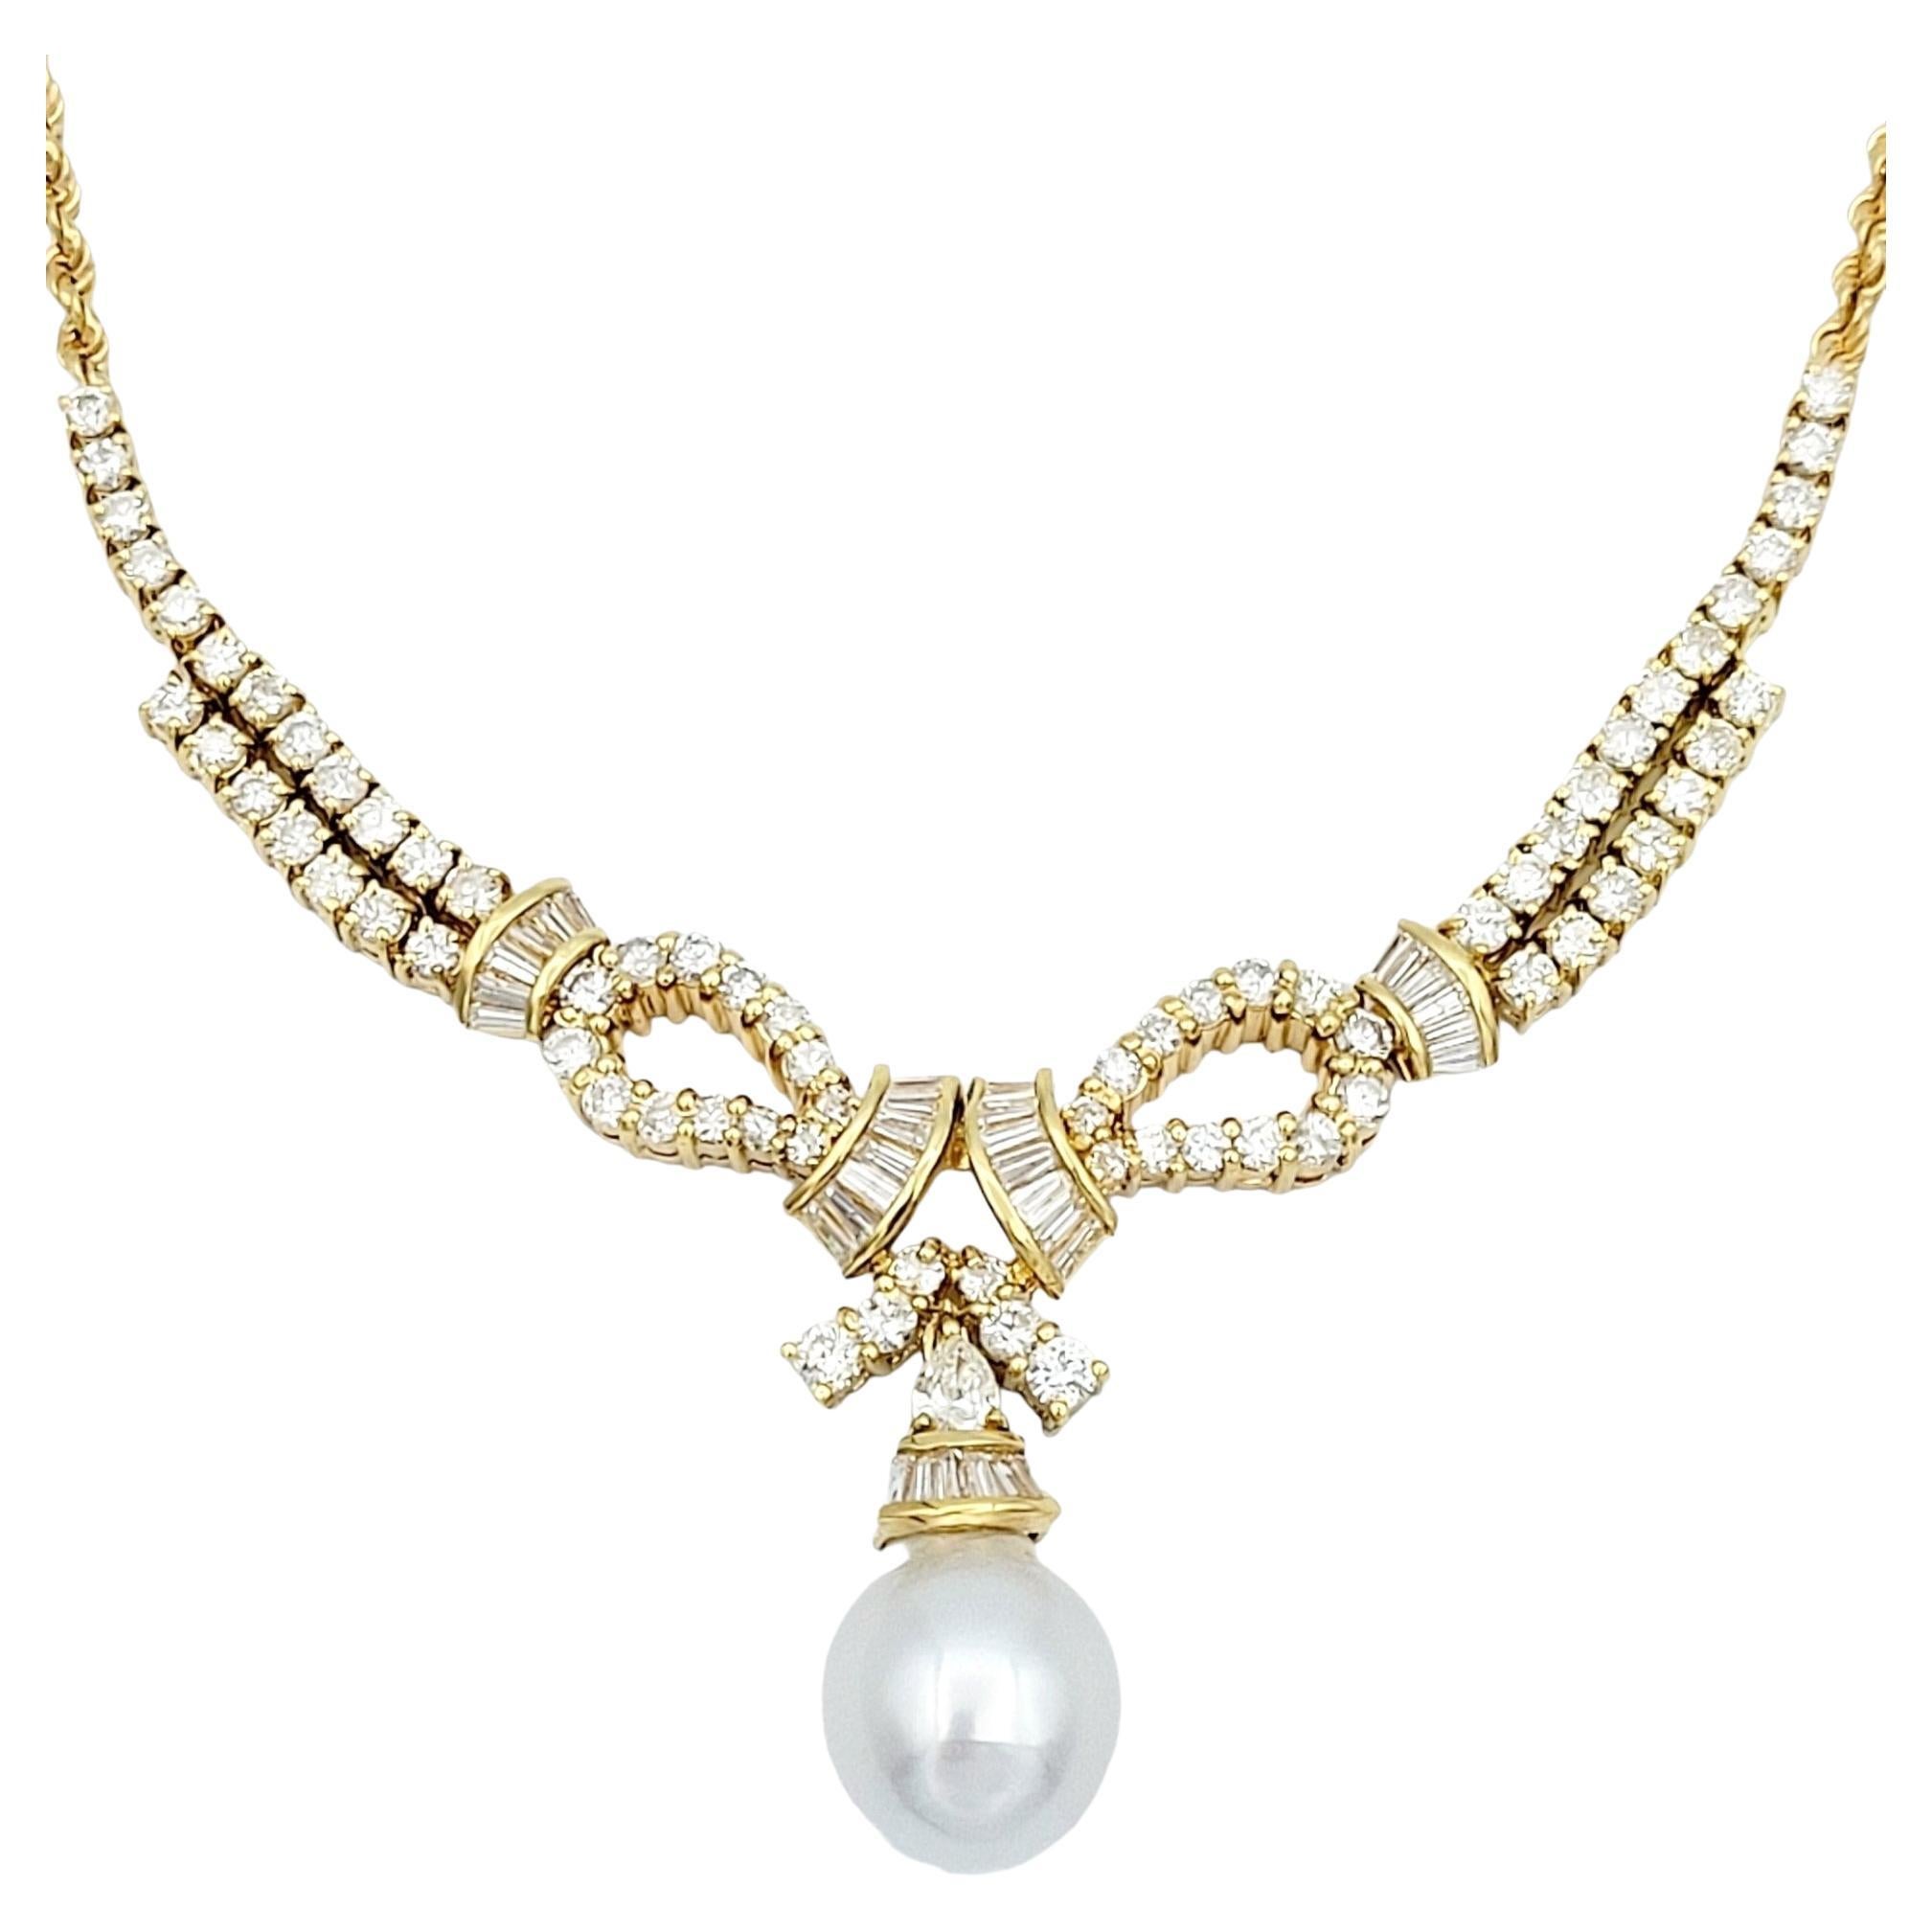 Collier à chaîne en or jaune 18 carats, diamants et perles de culture baroques